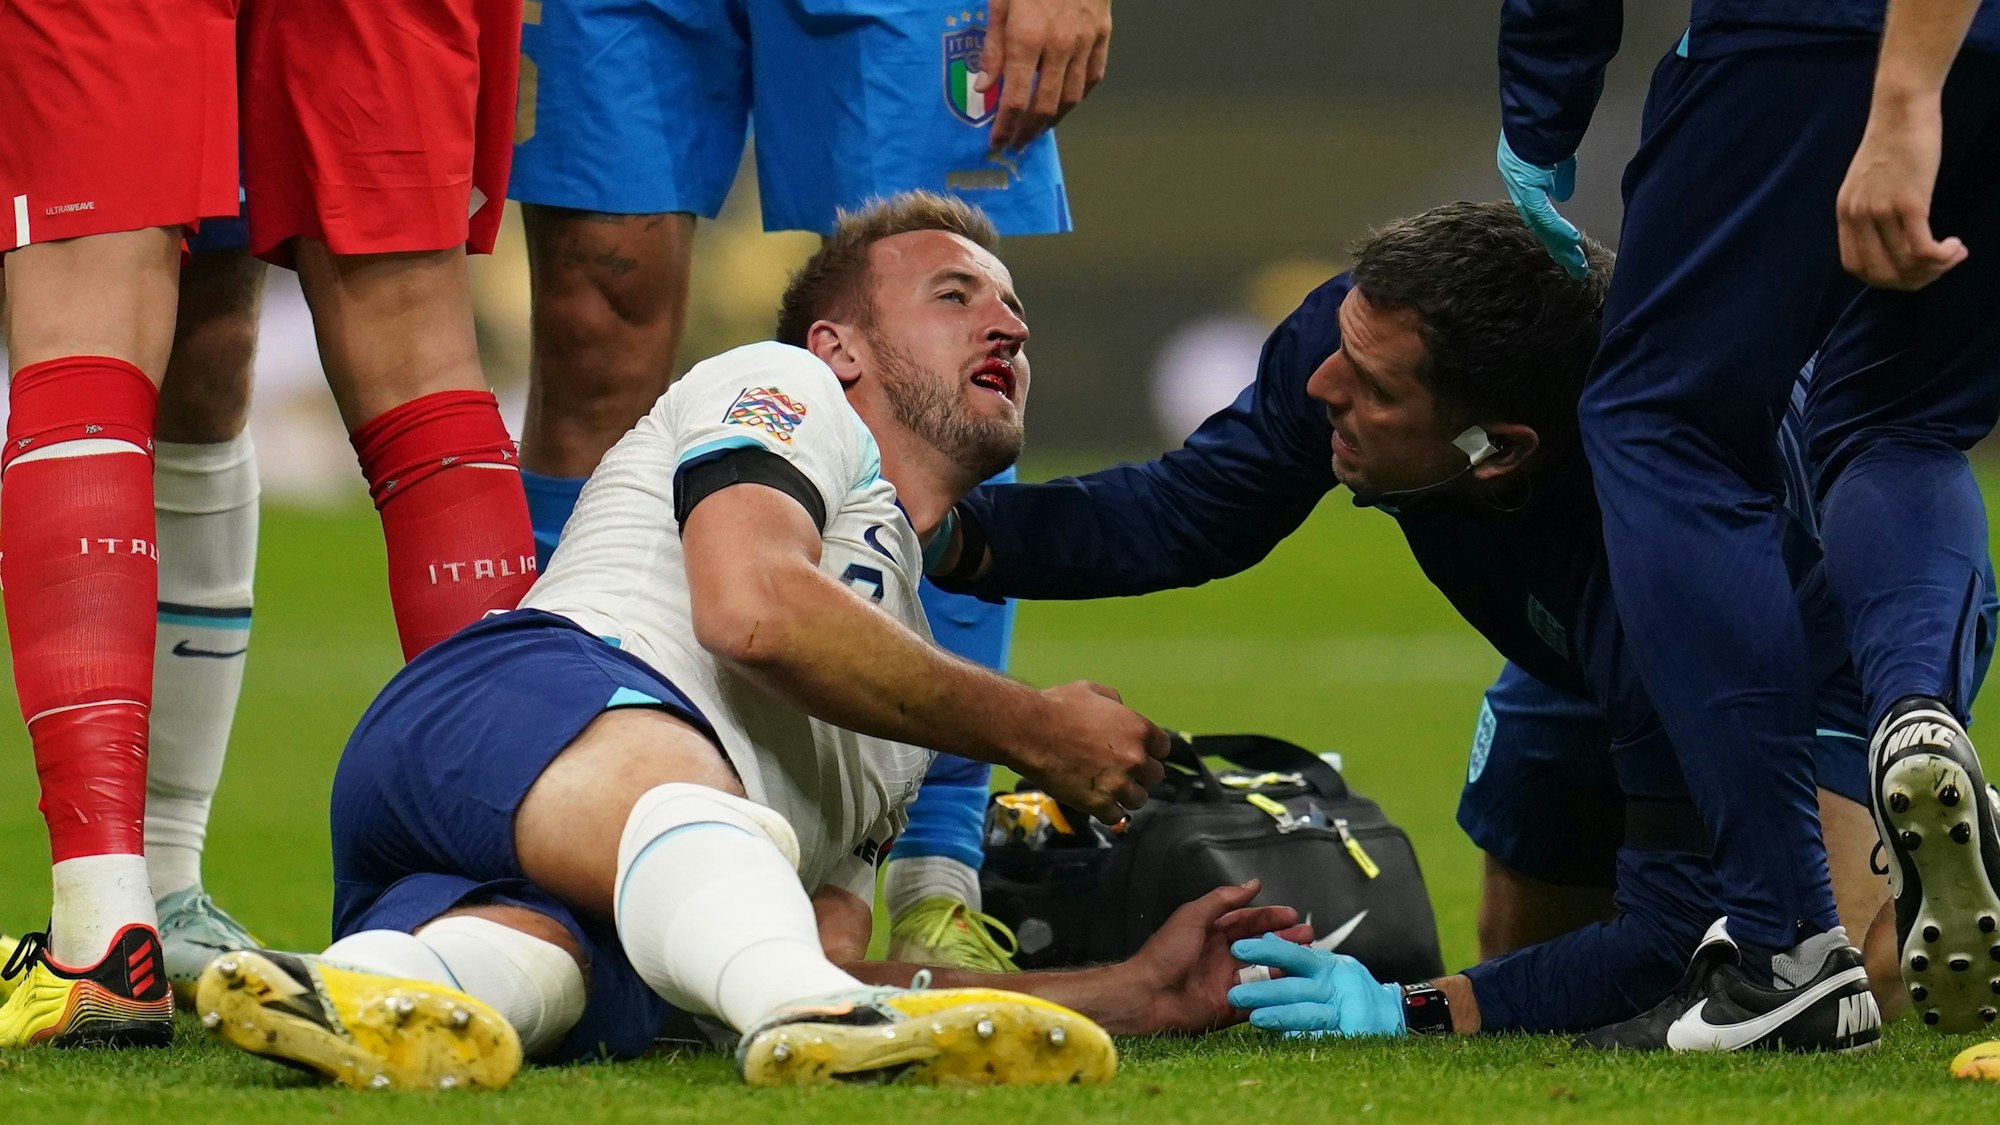 Der englische Nationalspieler Harry Kane wird nach einem Zusammenprall am Kopf behandelt.